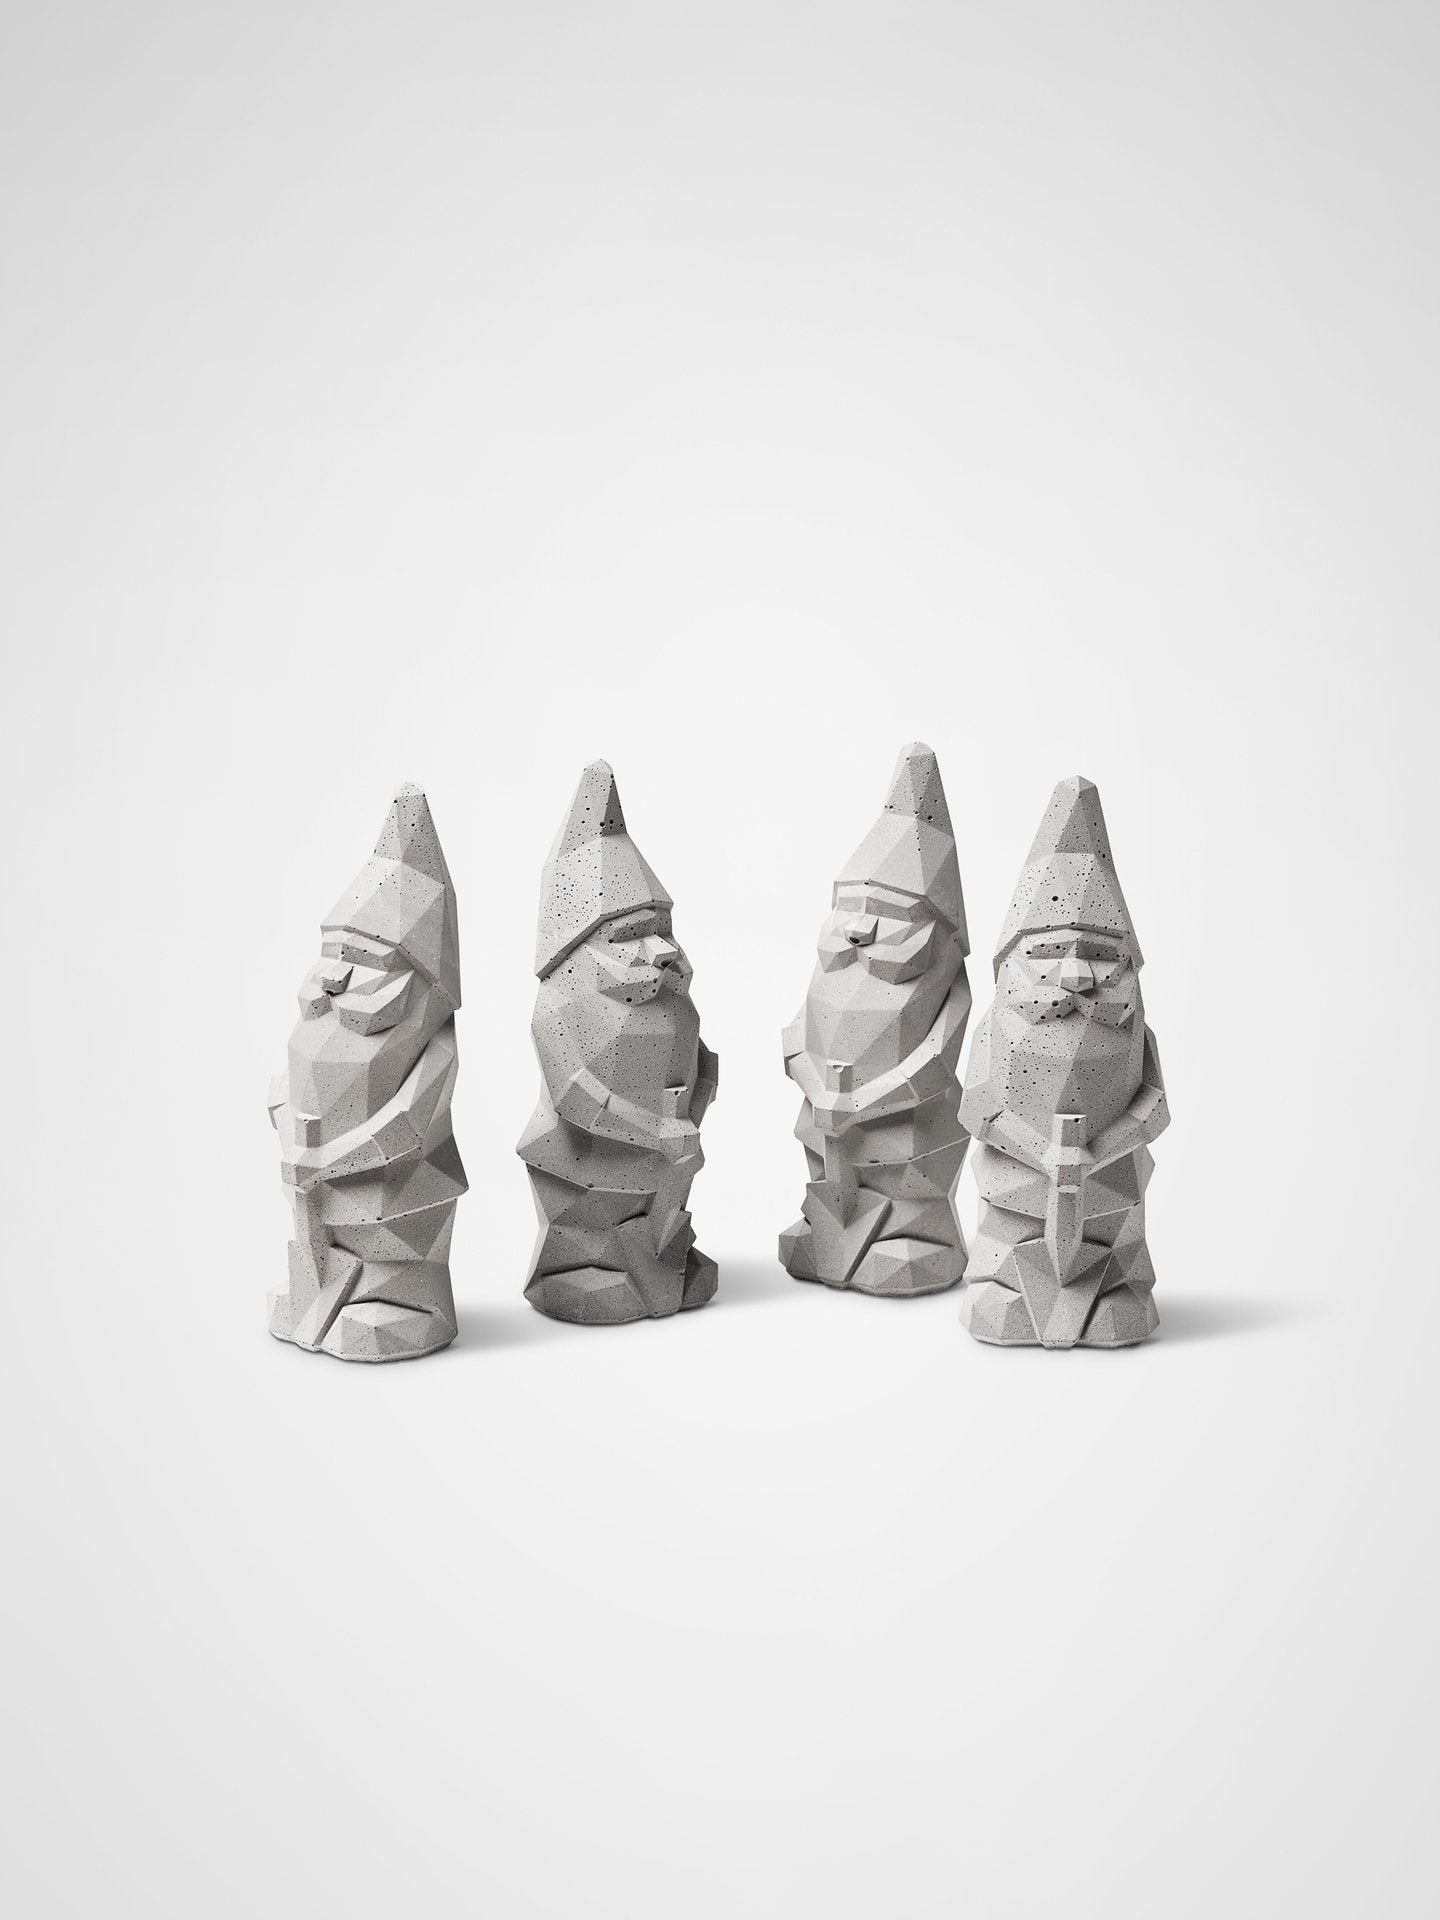 Nino Mini Garden Gnome | Plato Design - Wake.HK 